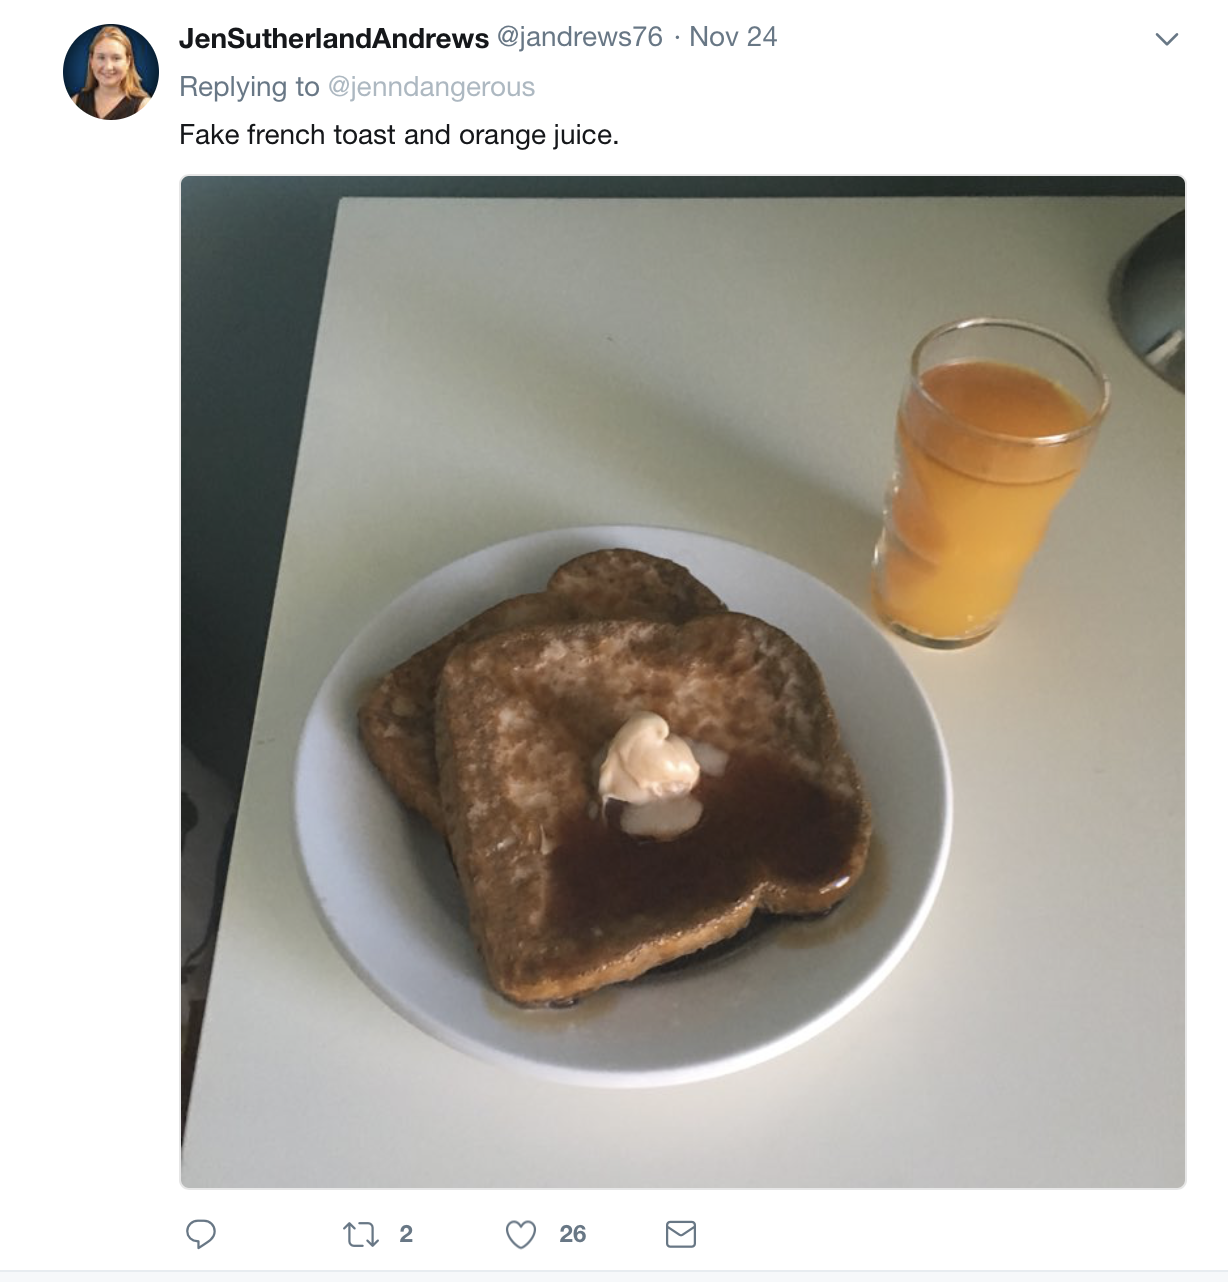 breakfast - JenSutherlandAndrews 24 endangerous Fake french toast and orange juice.